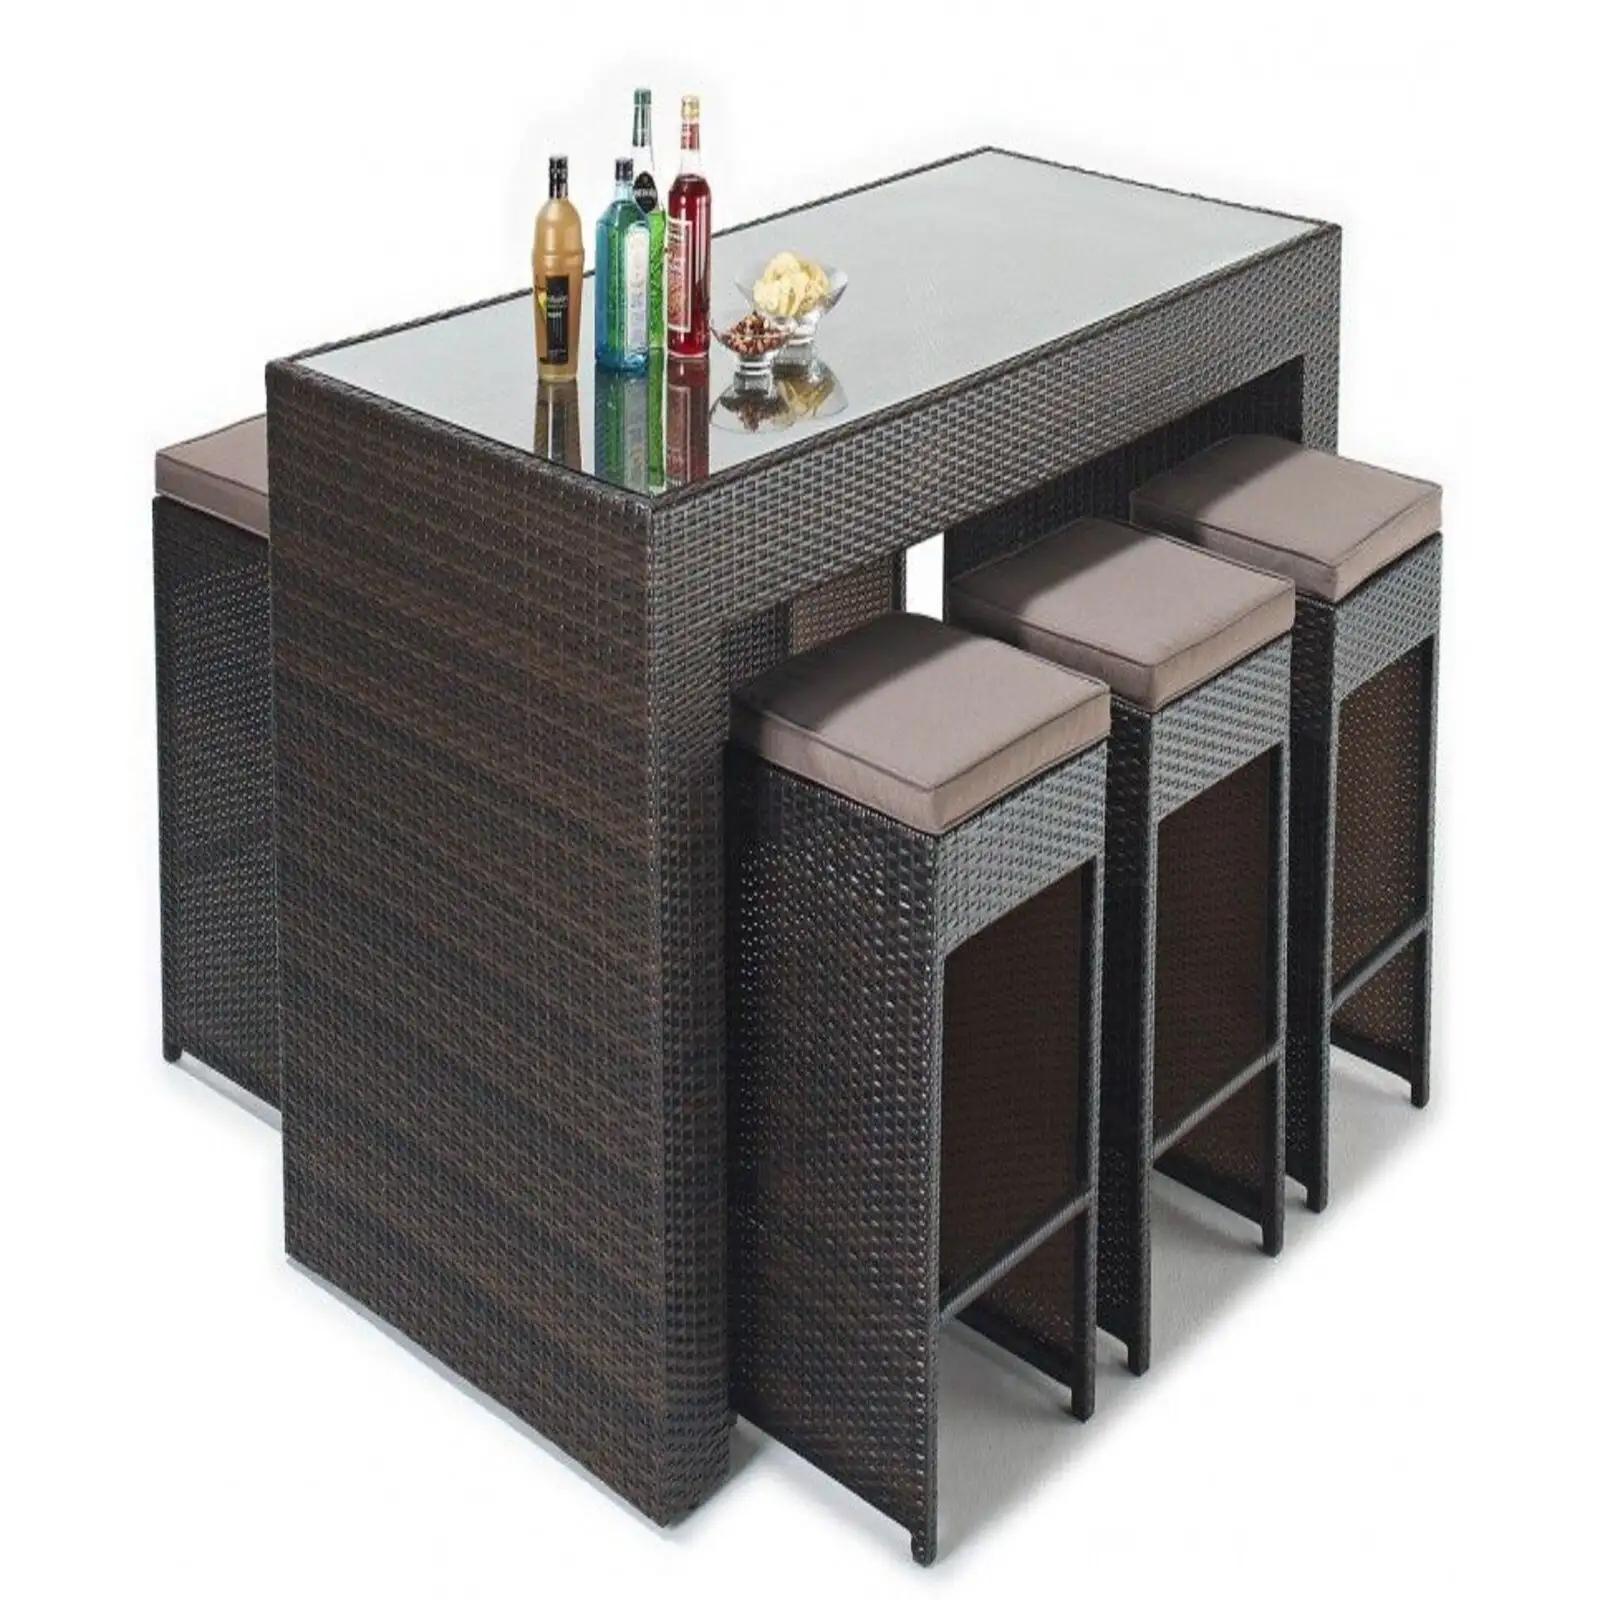 バーセット家具用の茶色の籐と茶色のクッションが付いたハイチェアとテーブル